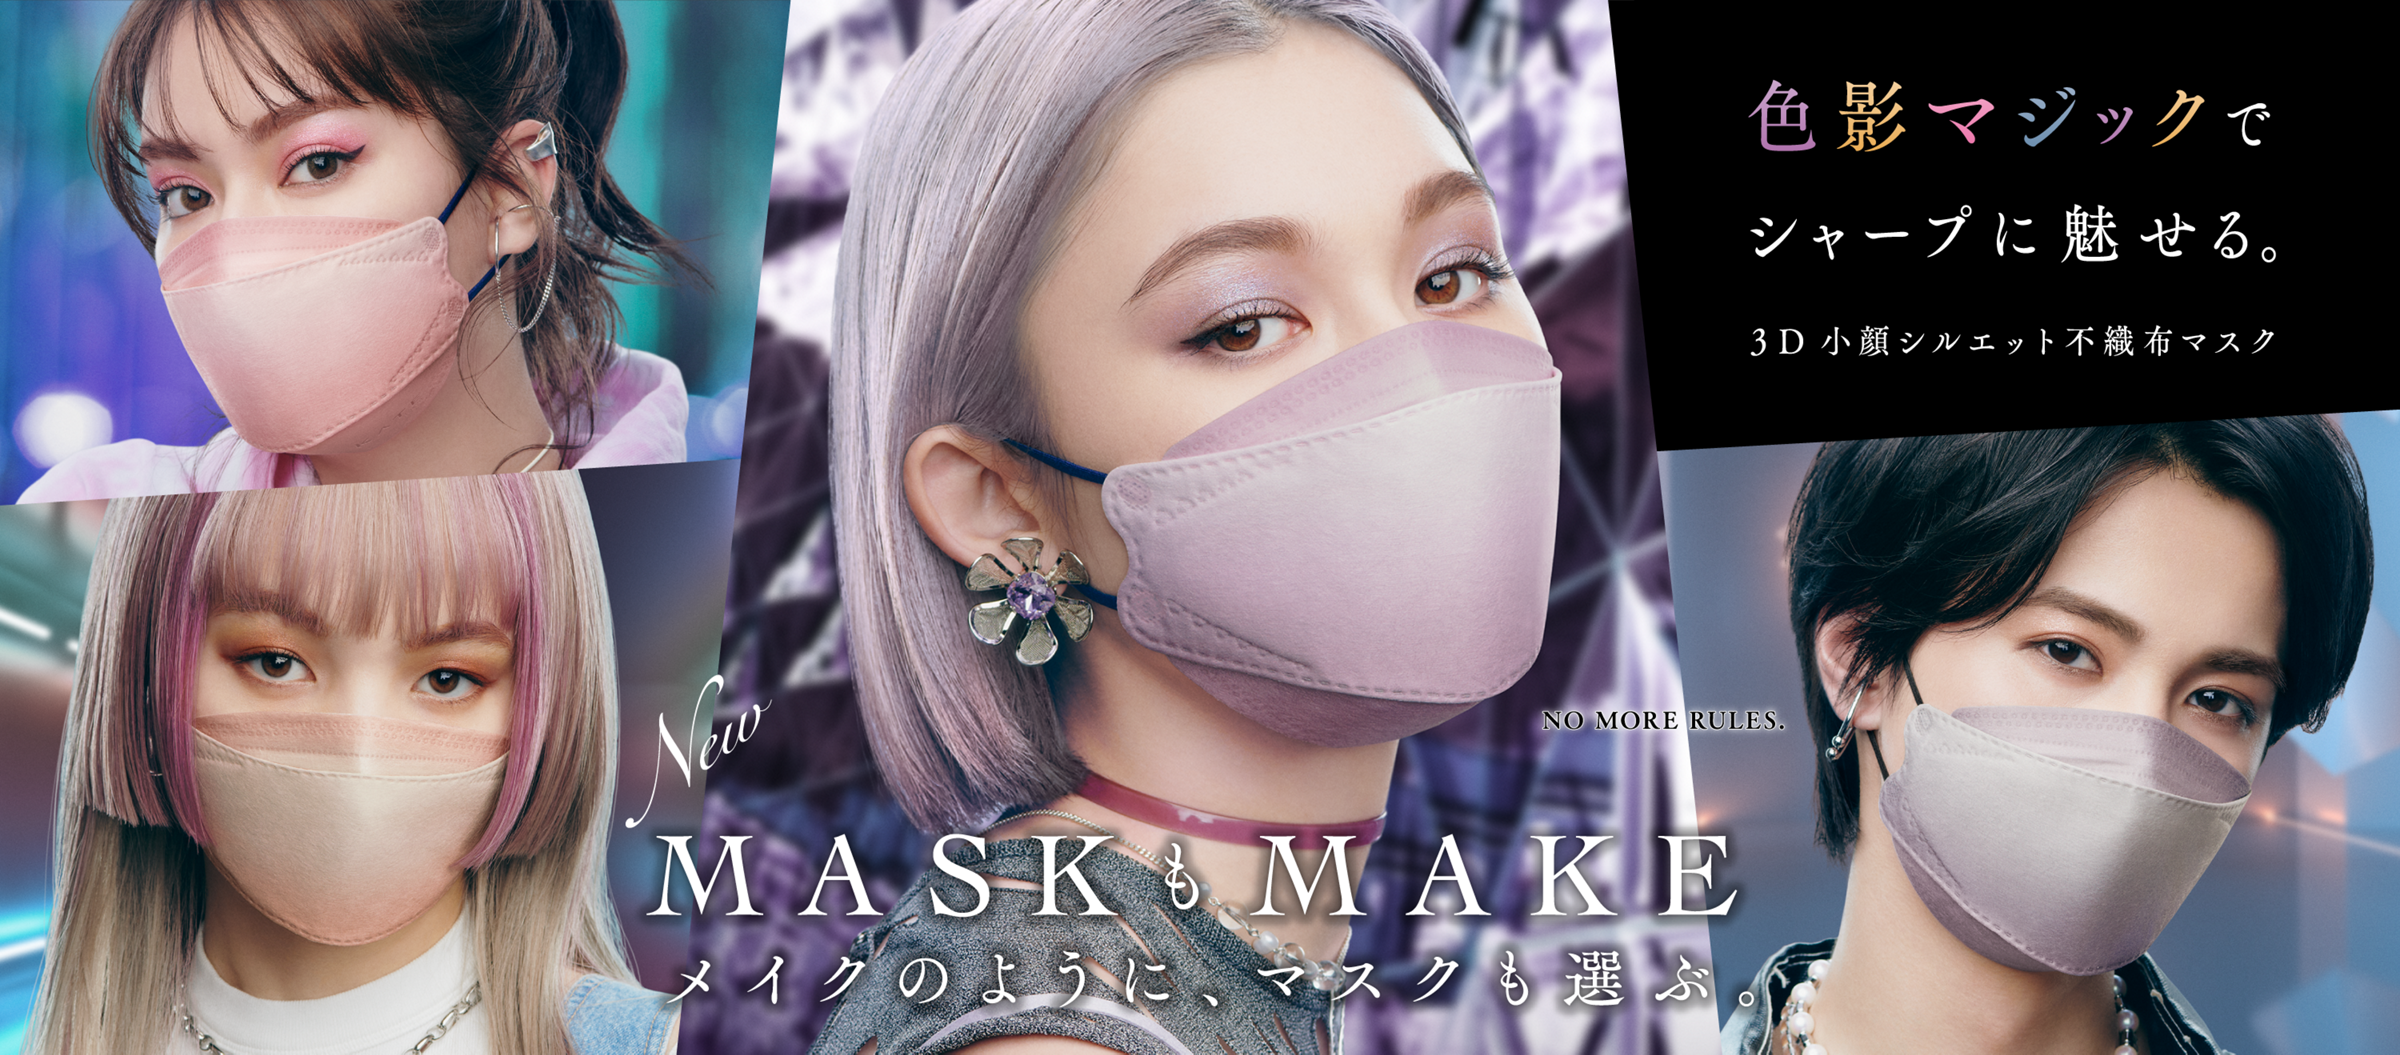 色影マジックでシャープに魅せる。3D小顔シルエット不織布マスク MASKもMAKE。メイクのように、マスクも選ぶ。